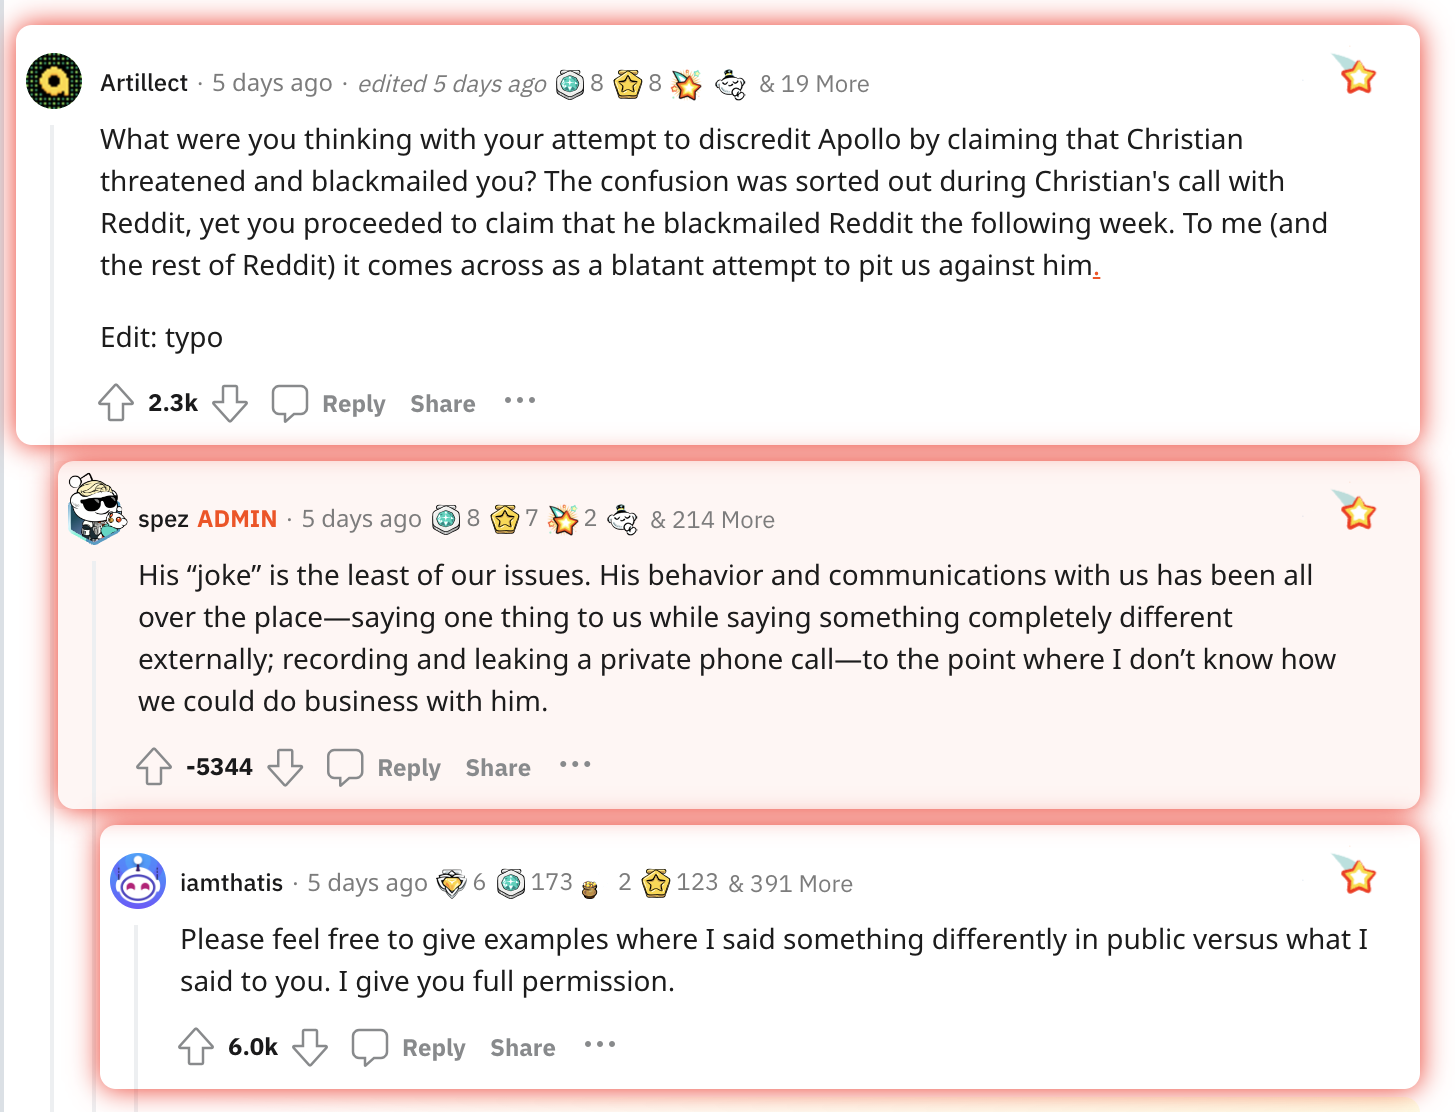 Las comunidades populares de Reddit apoyan a estos desarrolladores de aplicaciones en una protesta prolongada